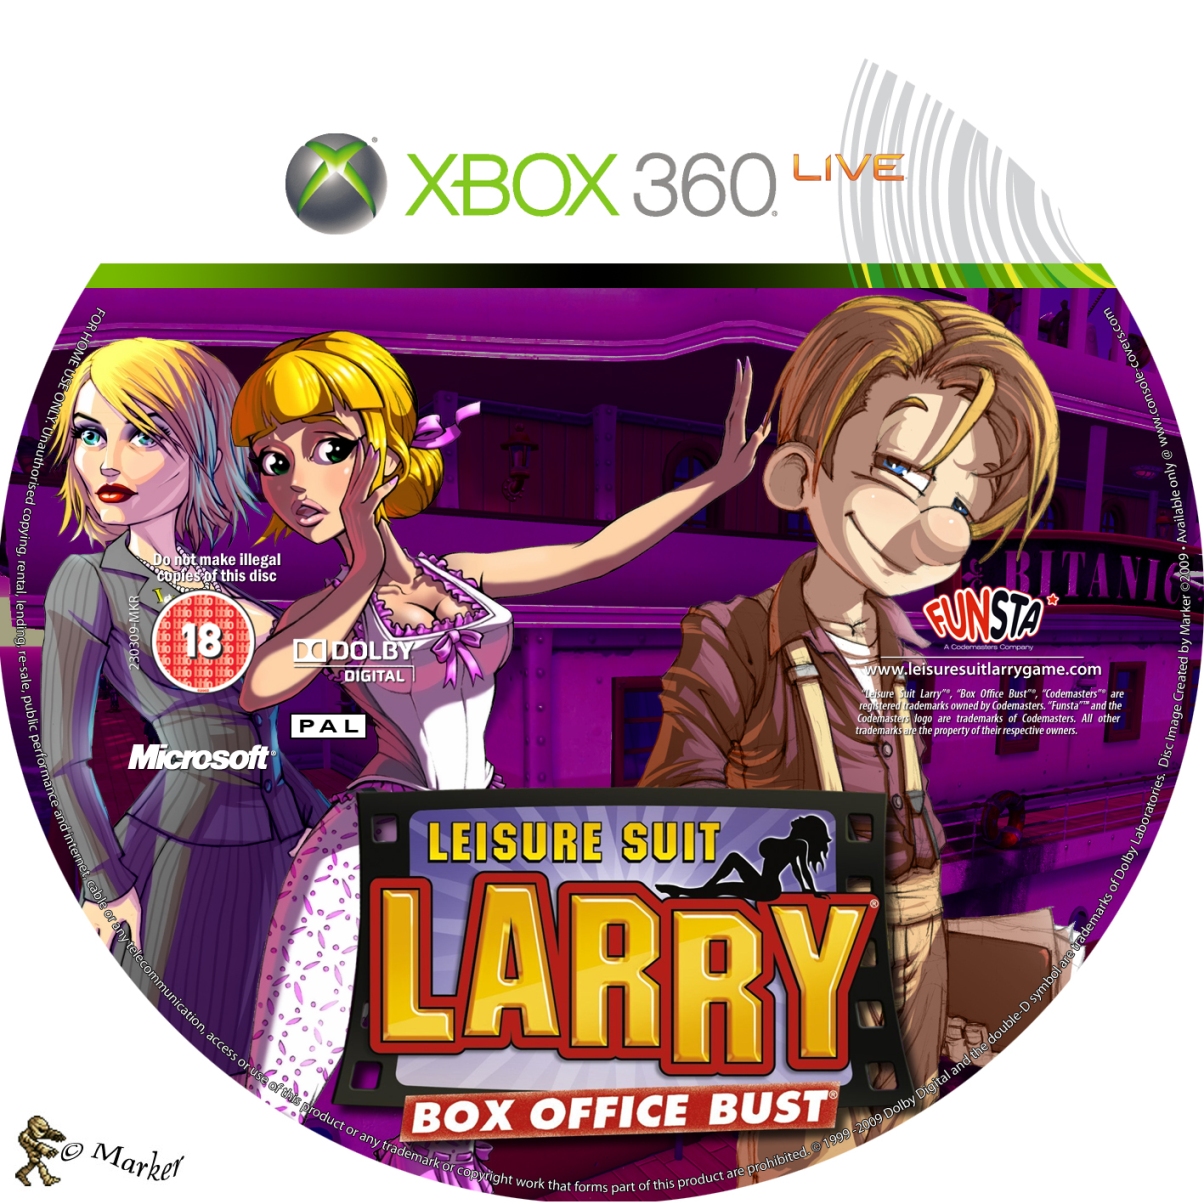 Larry box. Leisure Suit Larry Box Office. Leisure Suit Larry: Box Office Bust (2009). Leisure Suit Larry Box Office Bust 18. Xbox 360 Leisure Suit Larry Box Office Bust обложки.